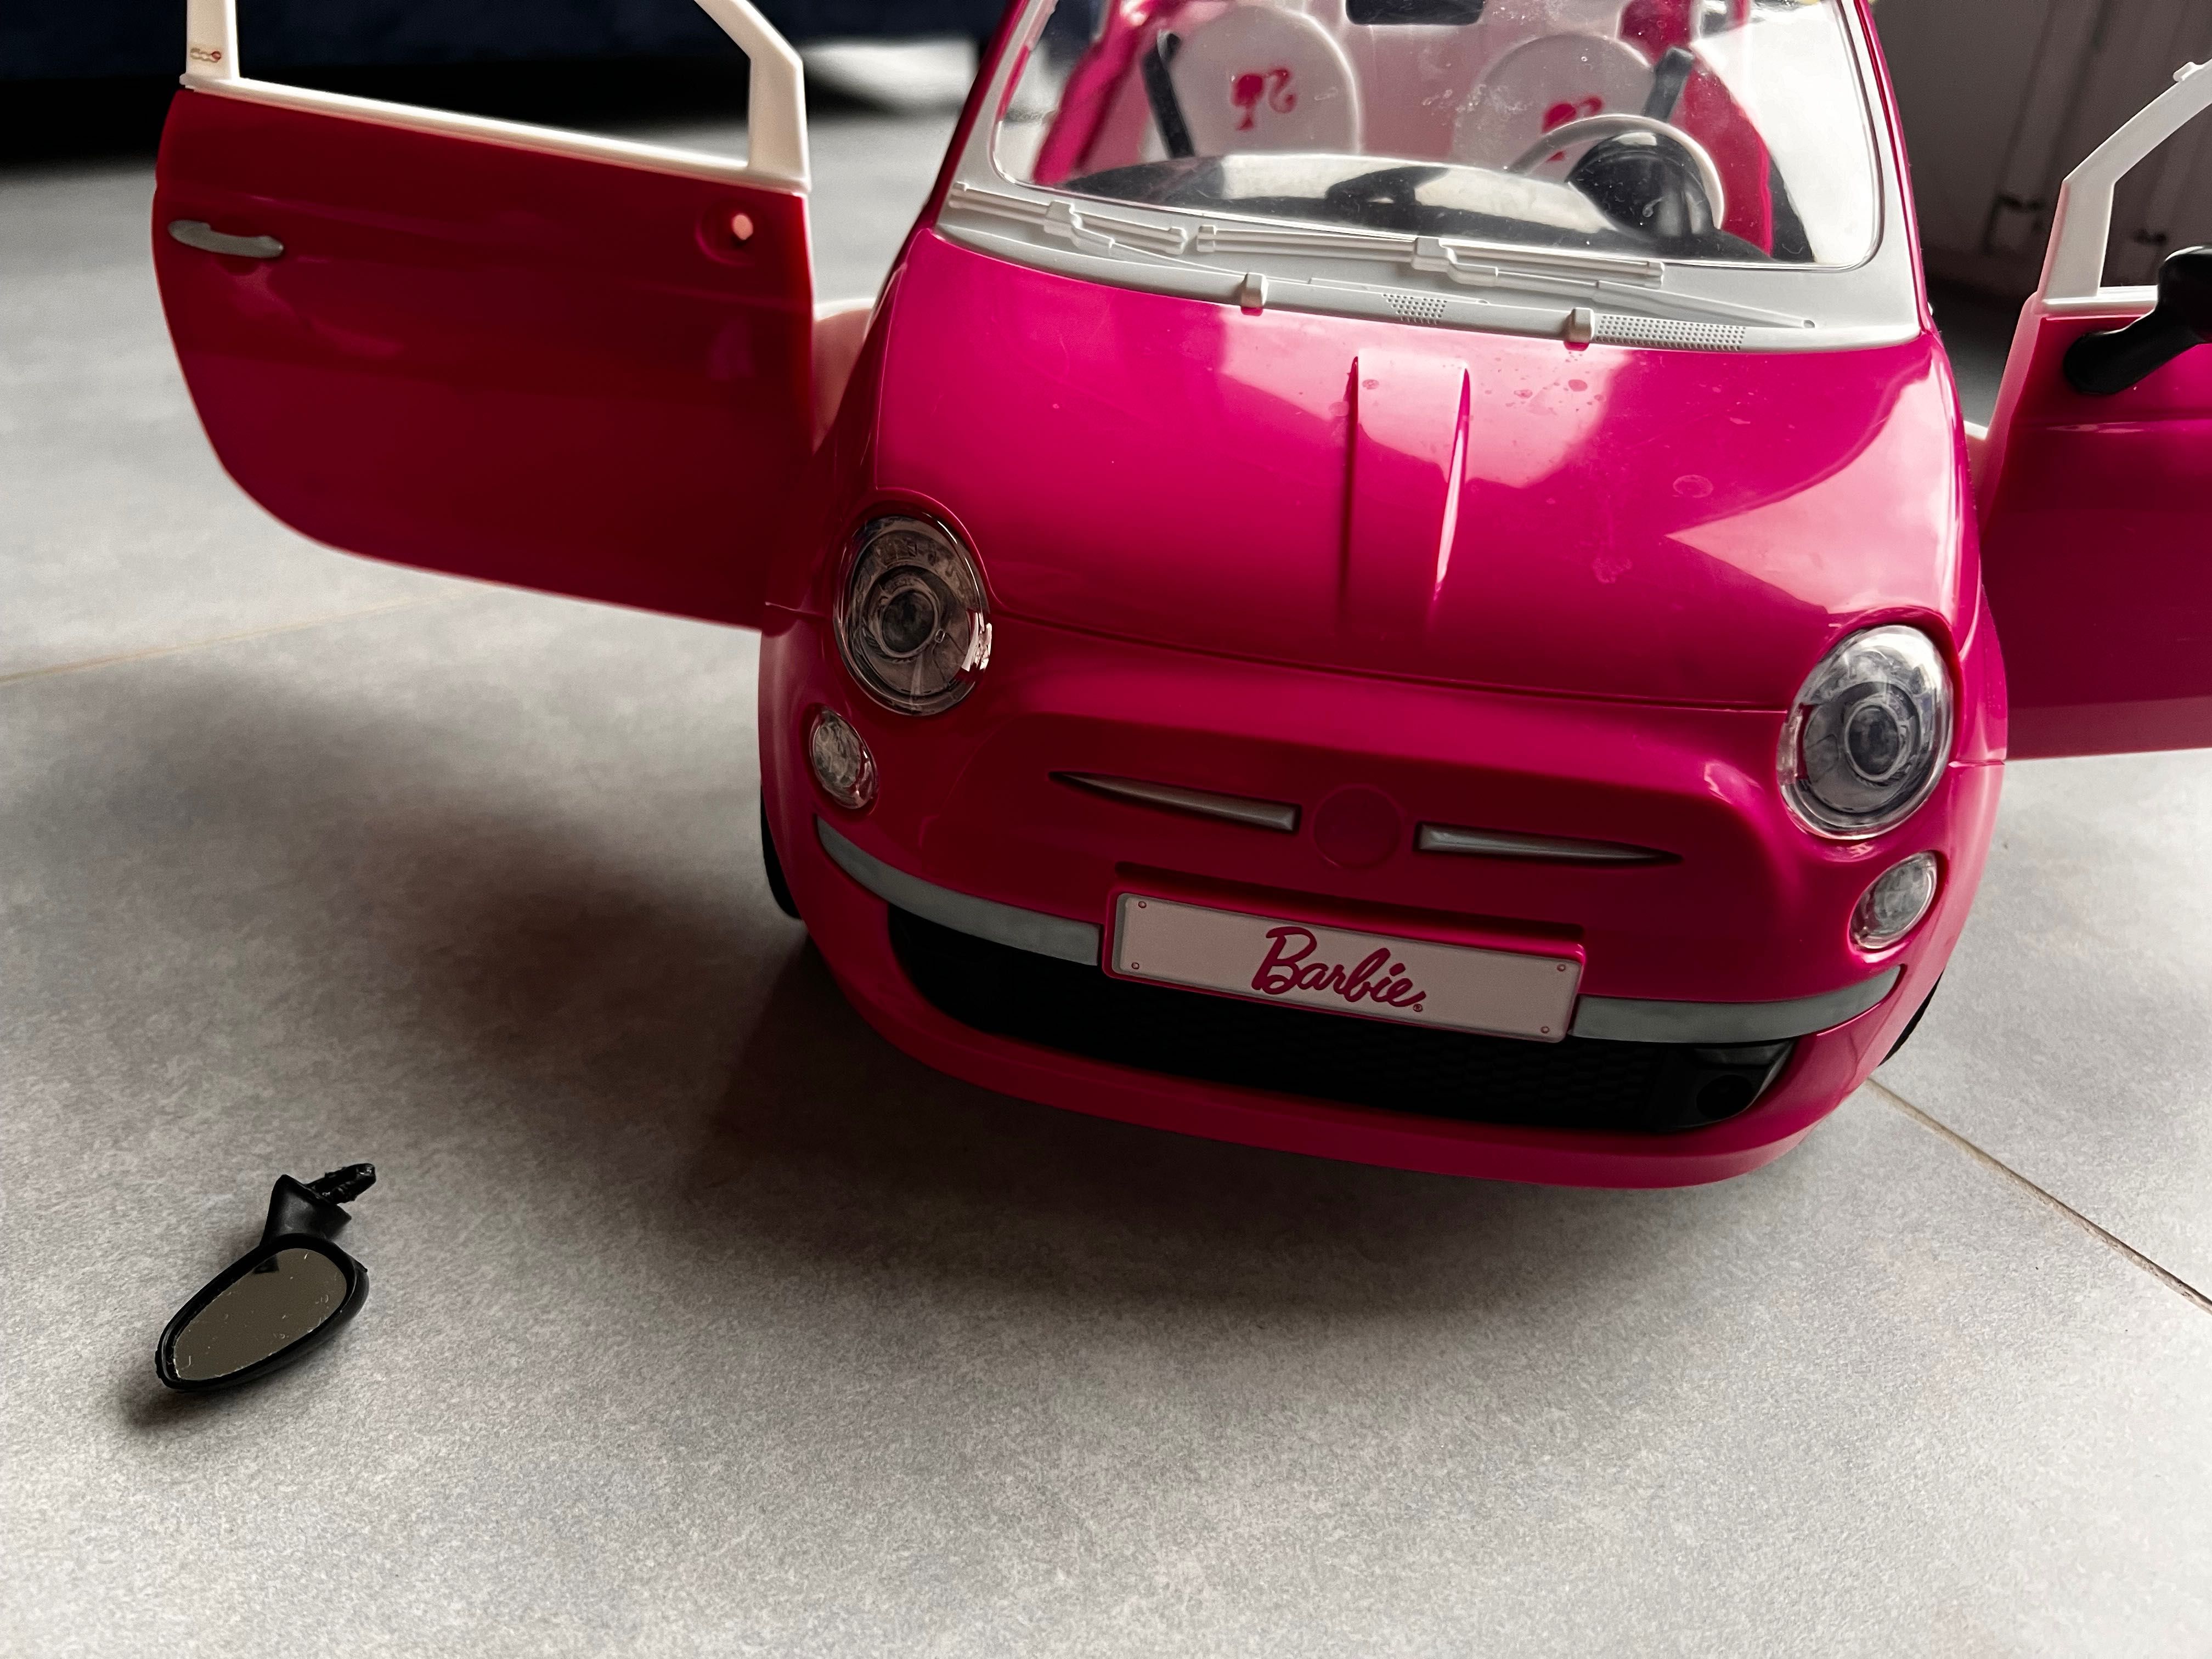 Lalka Barbie z samochodem